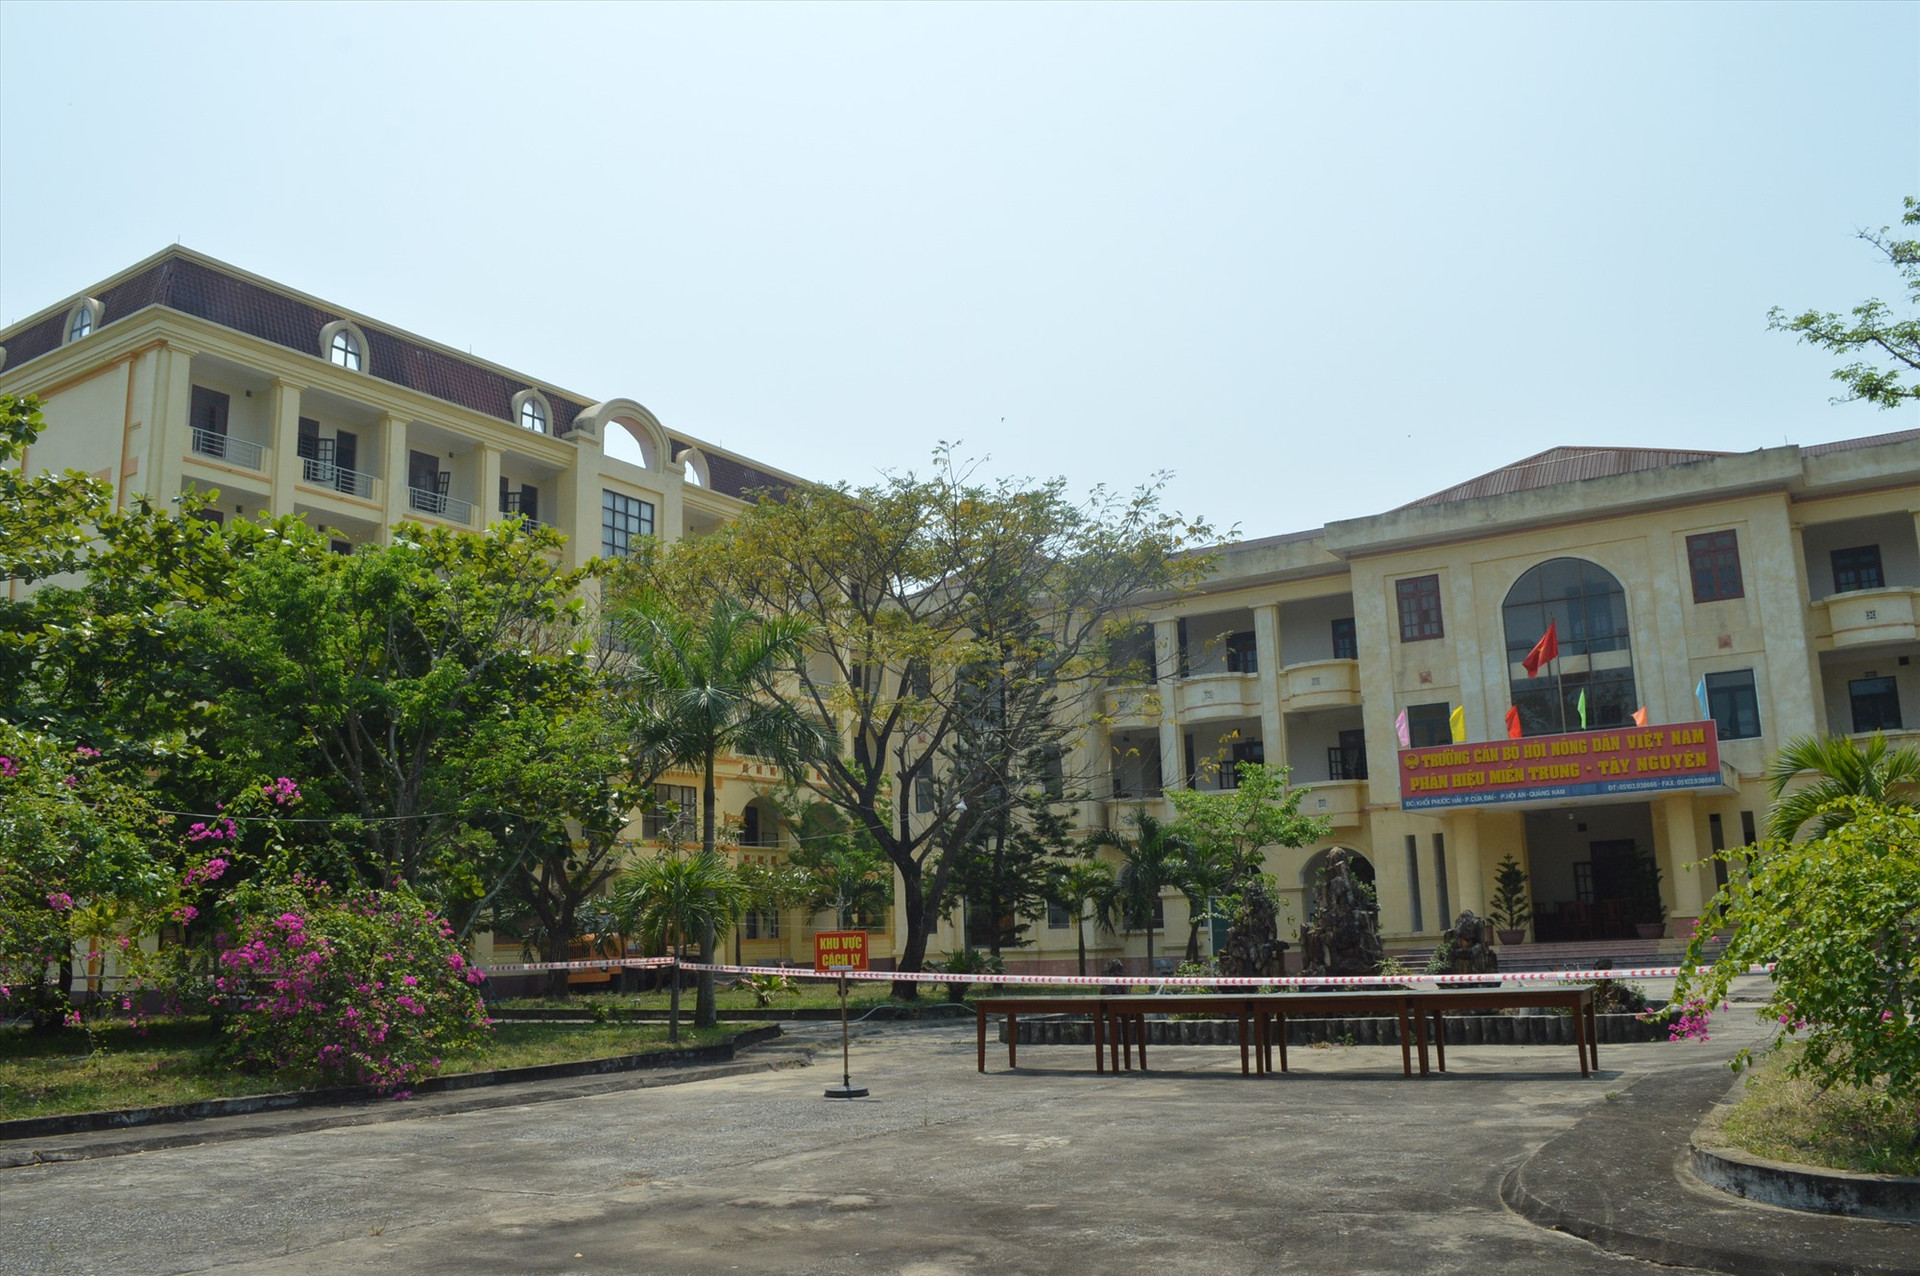 Khu cách ly tập trung cơ sở Trường Cán bộ Hội Nông dân Việt Nam tại Hội An đã sẳn sàng đón người vào cách ly